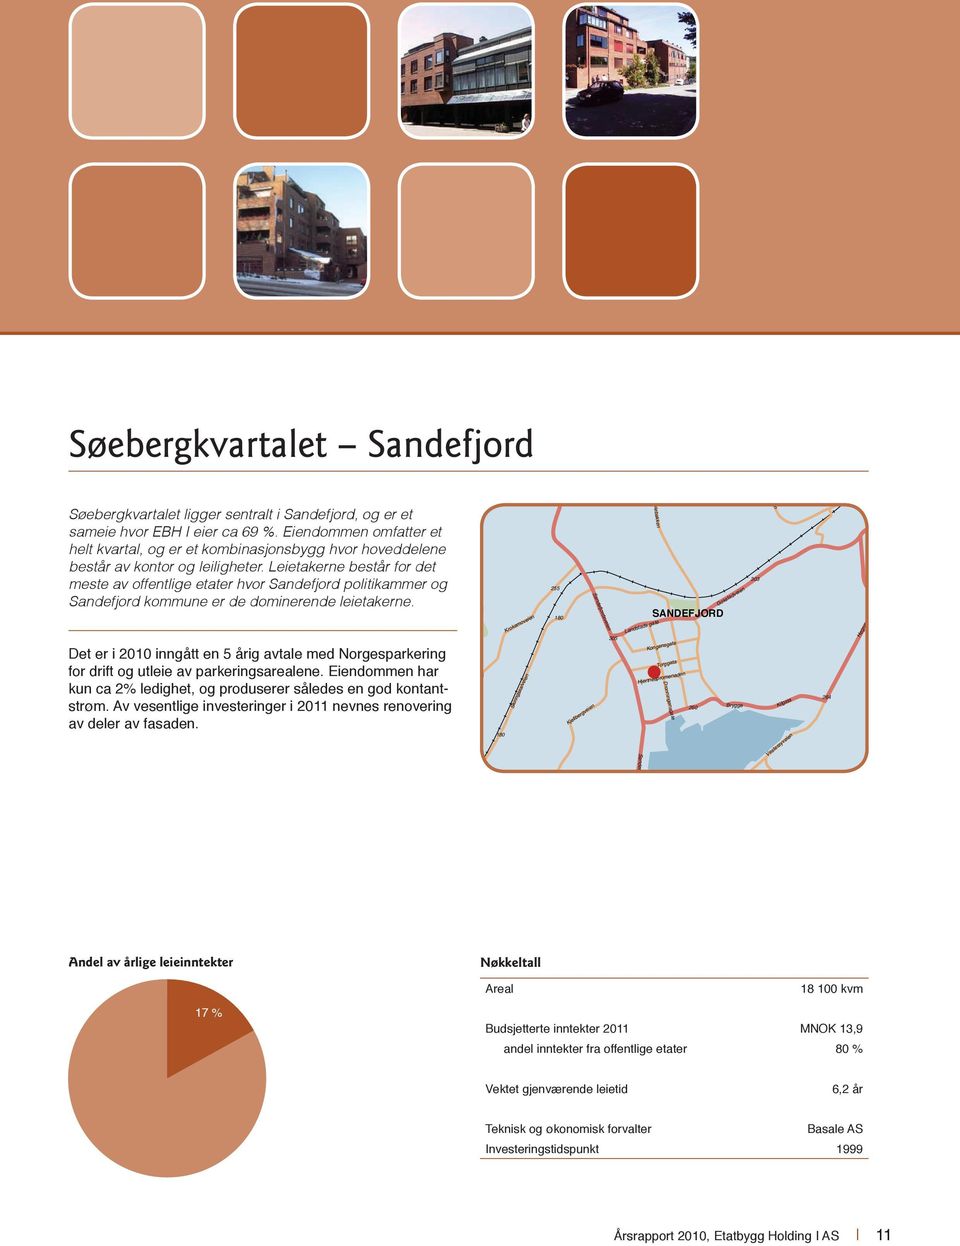 Leietakerne består for det meste av offentlige etater hvor Sandefjord politikammer og Sandefjord kommune er de dominerende leietakerne.